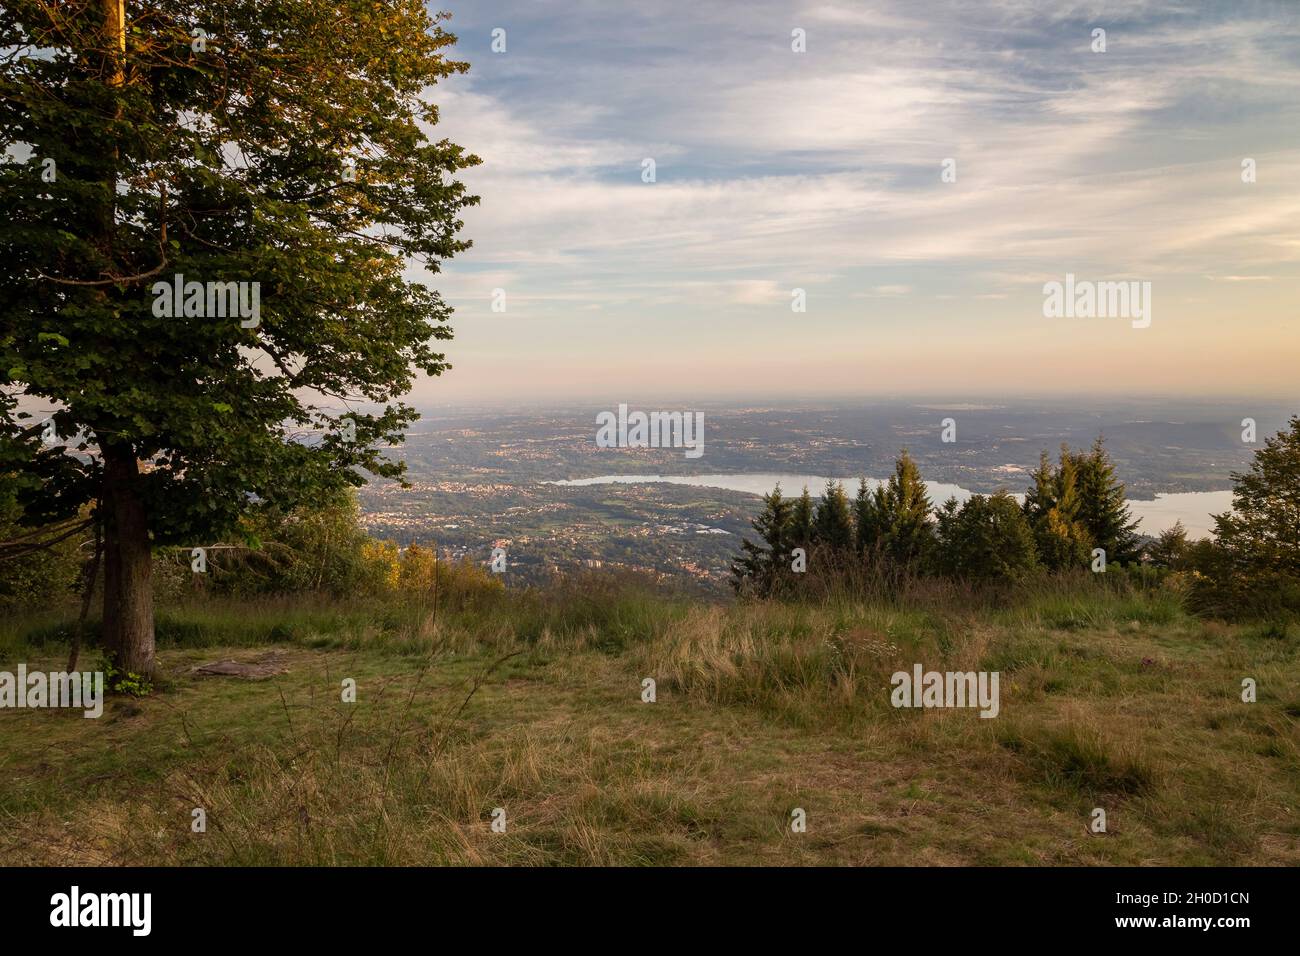 Vista del Lago Varese desde el mirador de Punta di Mezzo en Campo dei Fiori al atardecer. Campo dei Fiori, Varese, Parco Campo dei Fiori, Lombardía, Italia. Foto de stock